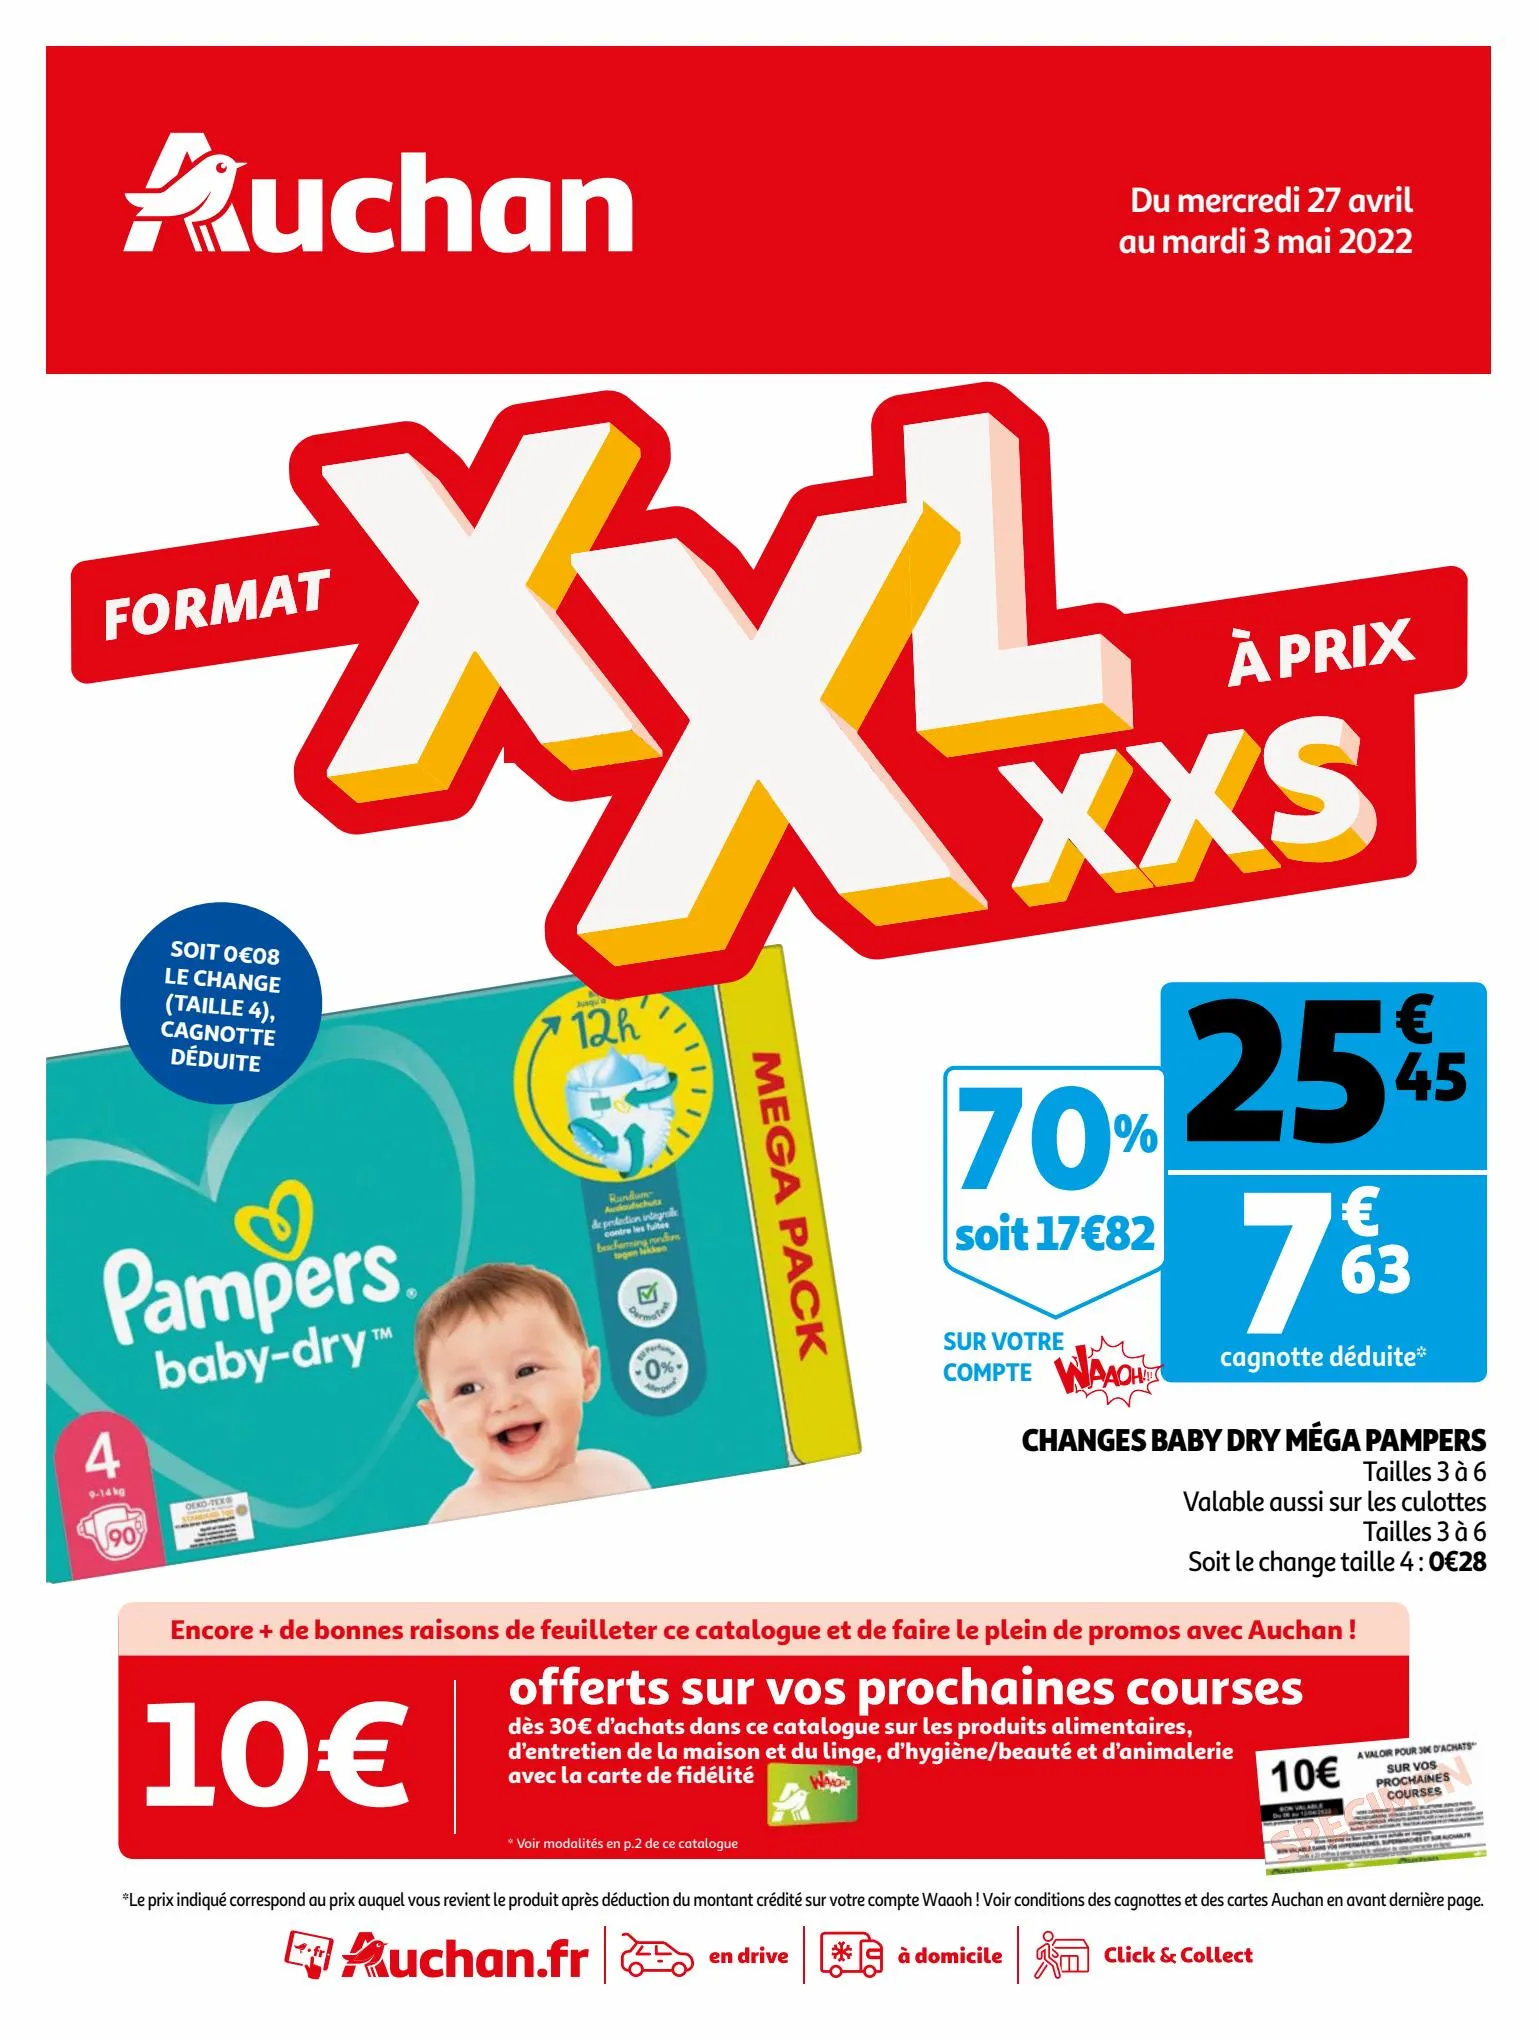 Catalogue FORMAT XXL À PRIX XXS, page 00001